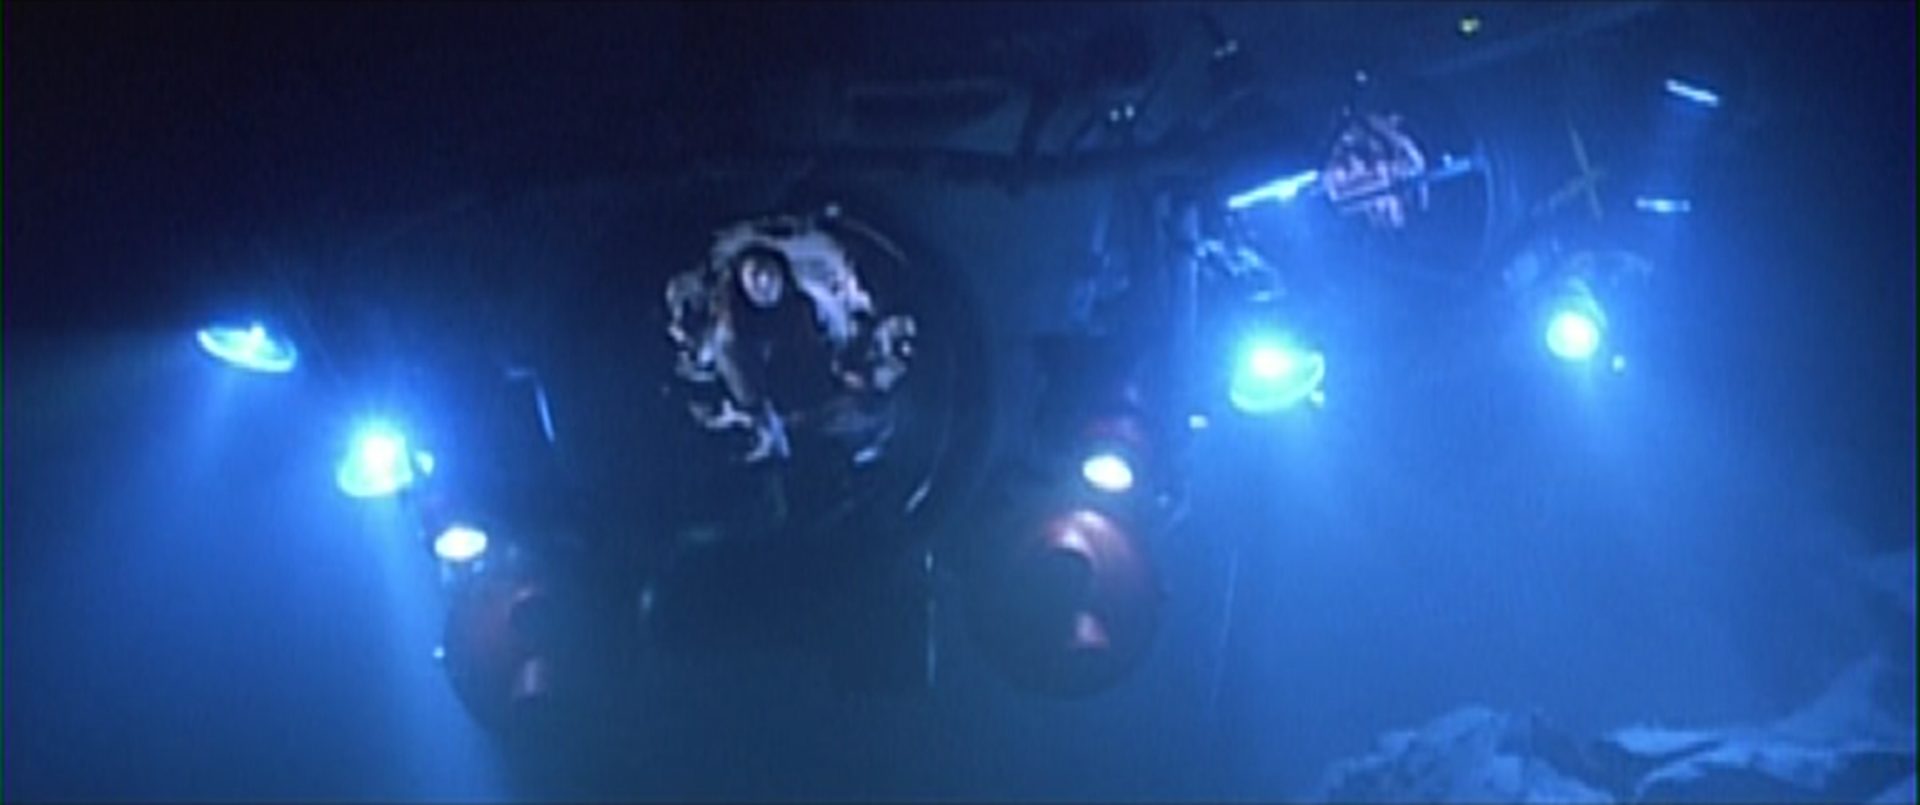 Verfolgungsjagd zweier Mini-U-Boote unter Wasser, die Tiefe wird von einigen Scheinwerfern erleuchtet.